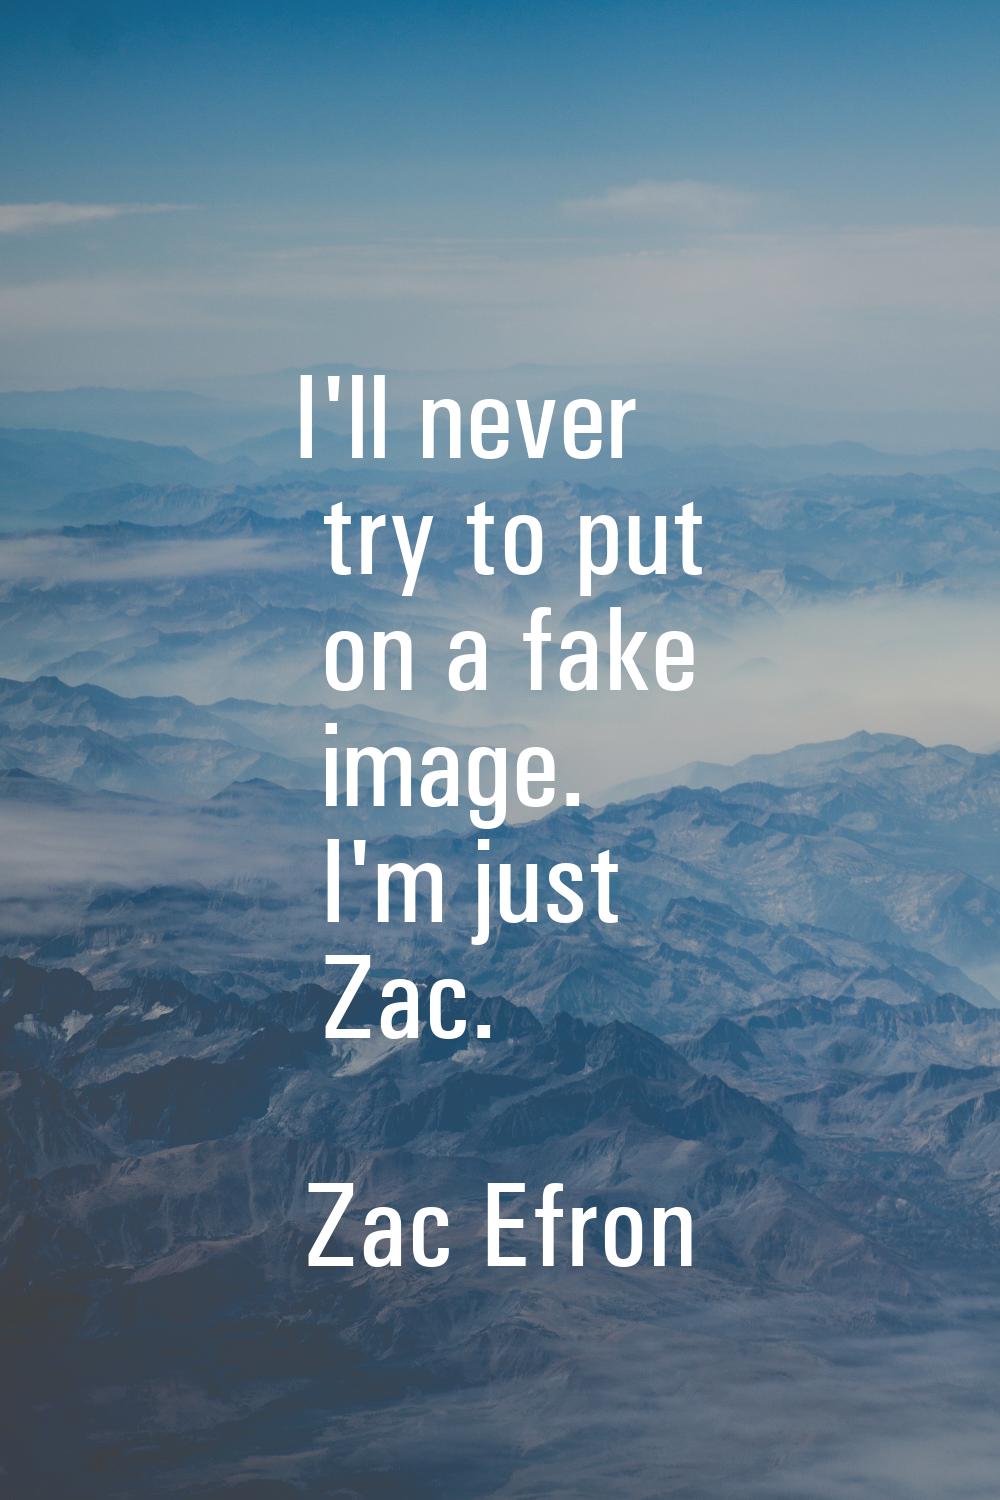 I'll never try to put on a fake image. I'm just Zac.